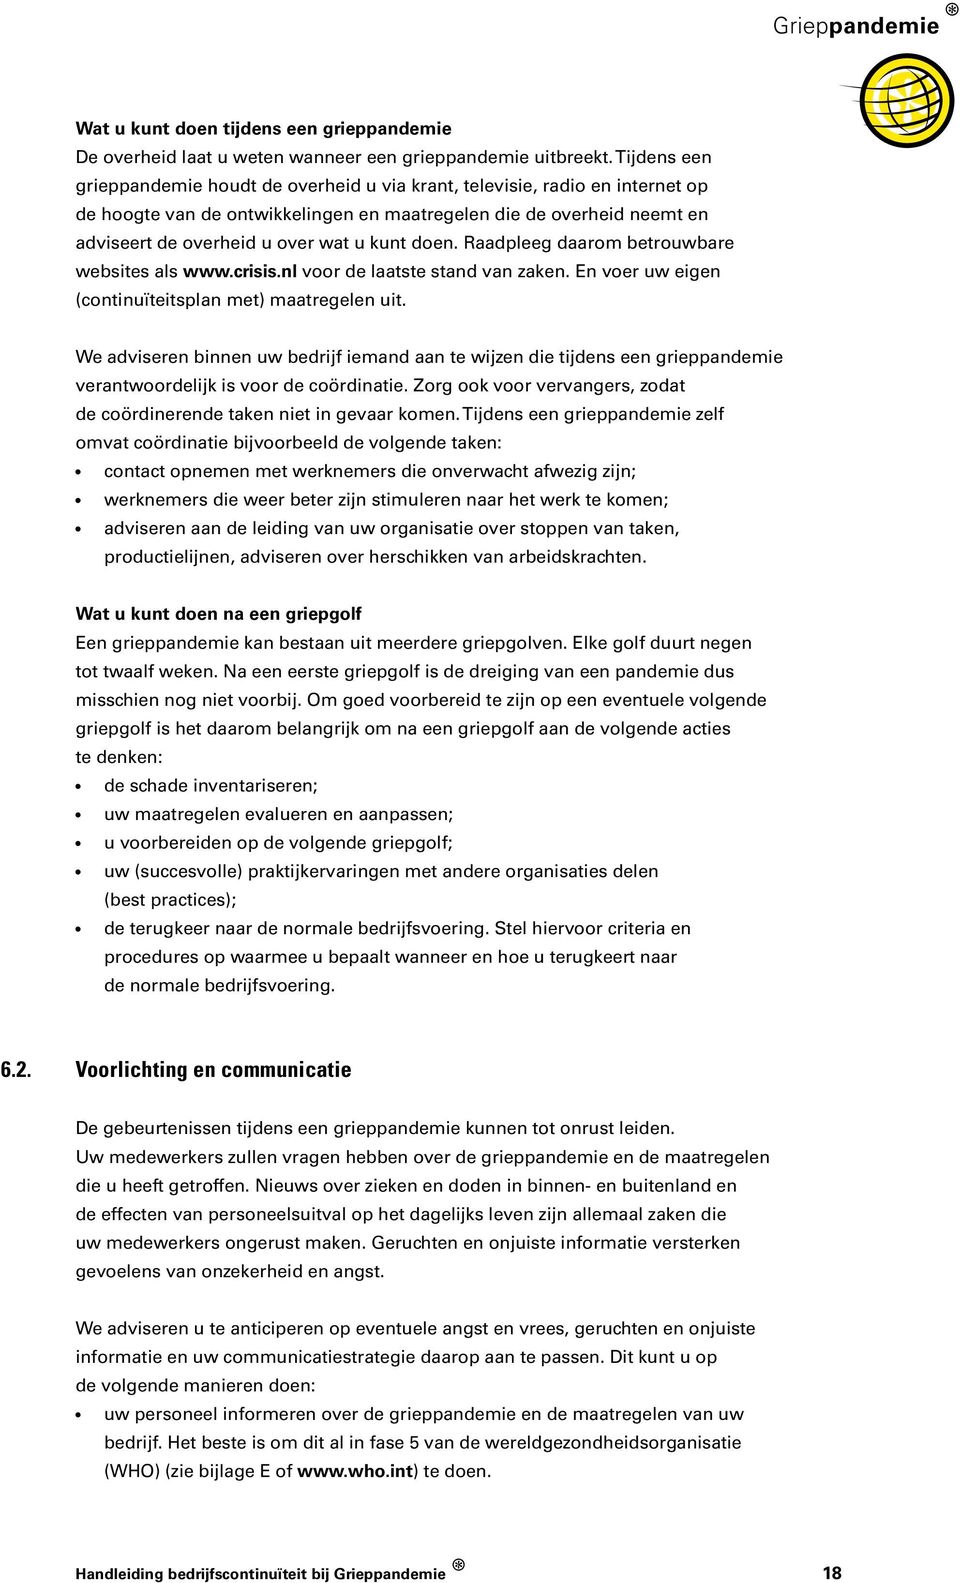 kunt doen. Raadpleeg daarom betrouwbare websites als www.crisis.nl voor de laatste stand van zaken. En voer uw eigen (continuïteitsplan met) maatregelen uit.